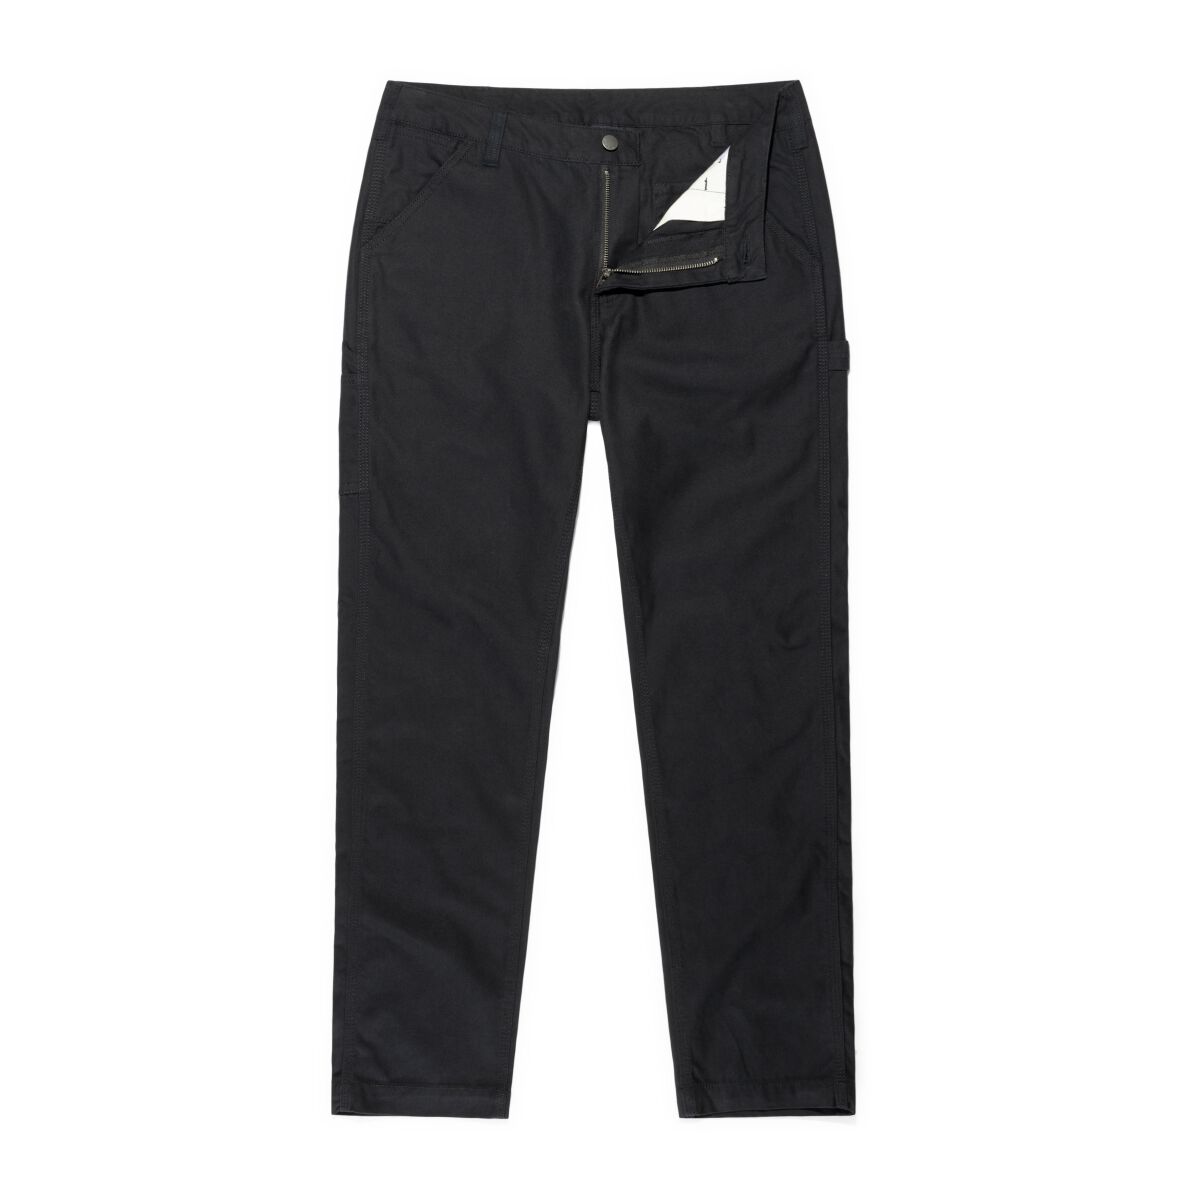 Vintage Industries Stoffhose - Cooper Pants - W32L32 bis W38L32 - für Männer - Größe W34L32 - schwarz